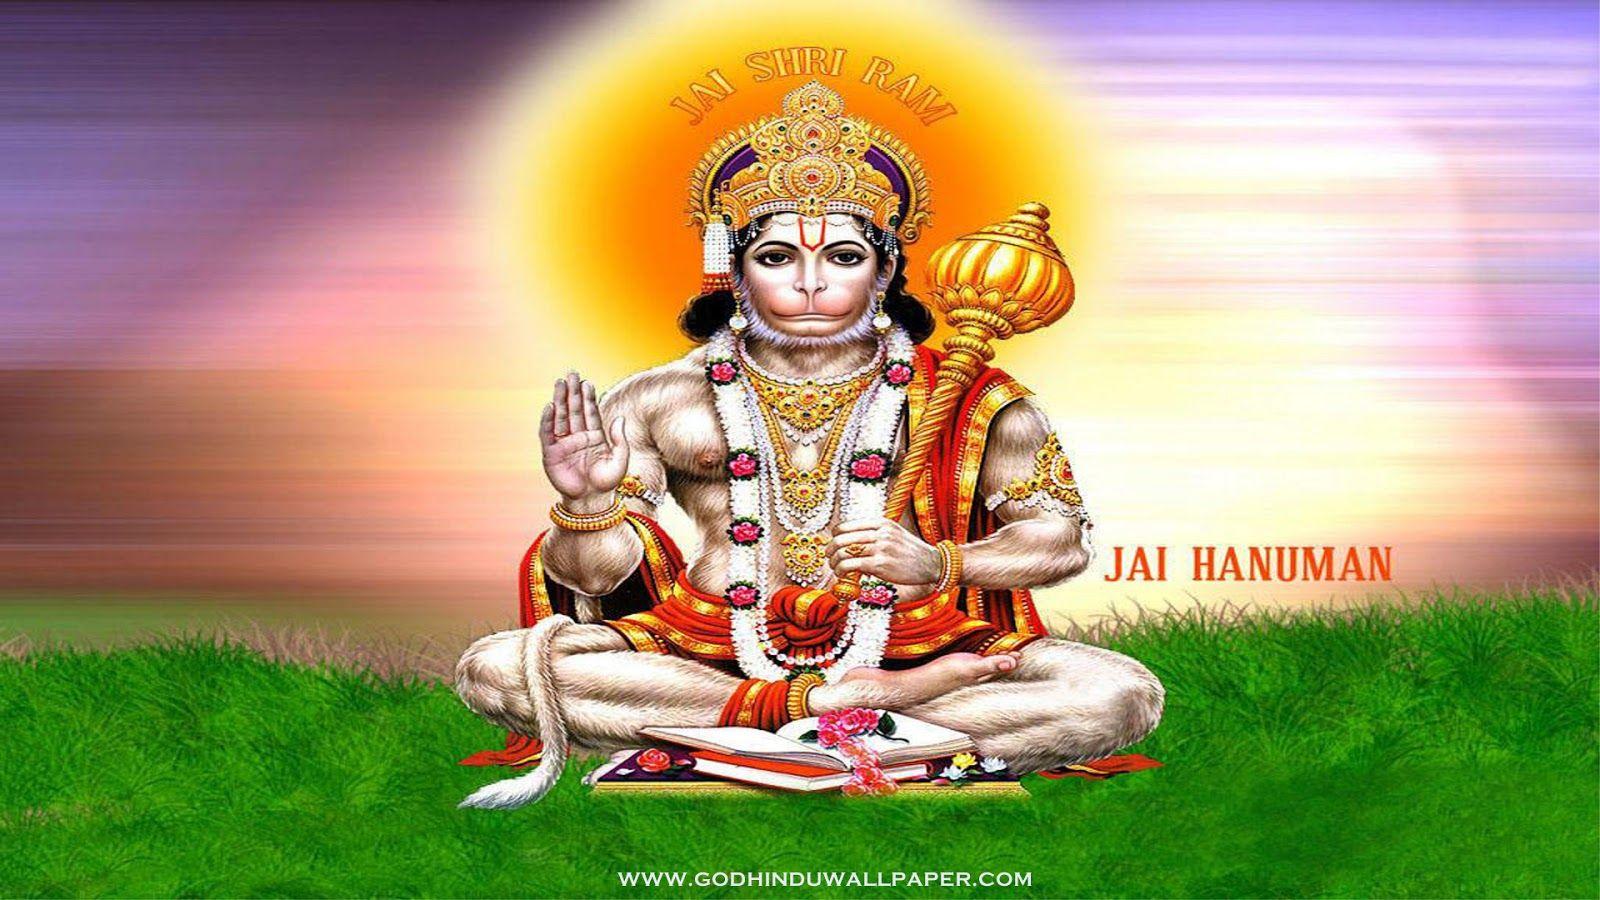 3D hindu god wallpaper, god wallpaper